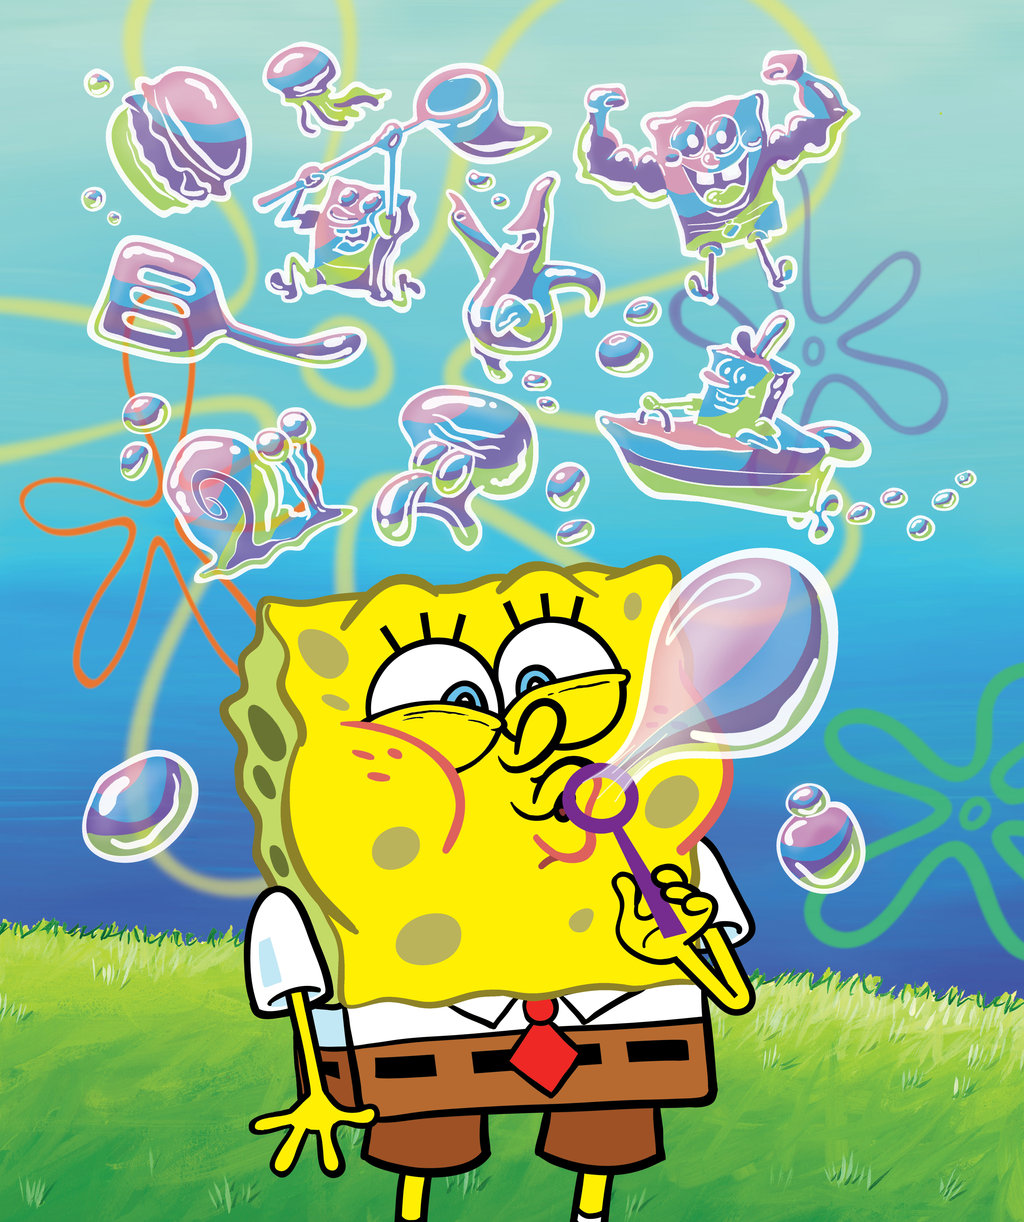 46 Meme Lucu Spongebob Keren Dan Terbaru Kumpulan Gambar Meme Lucu